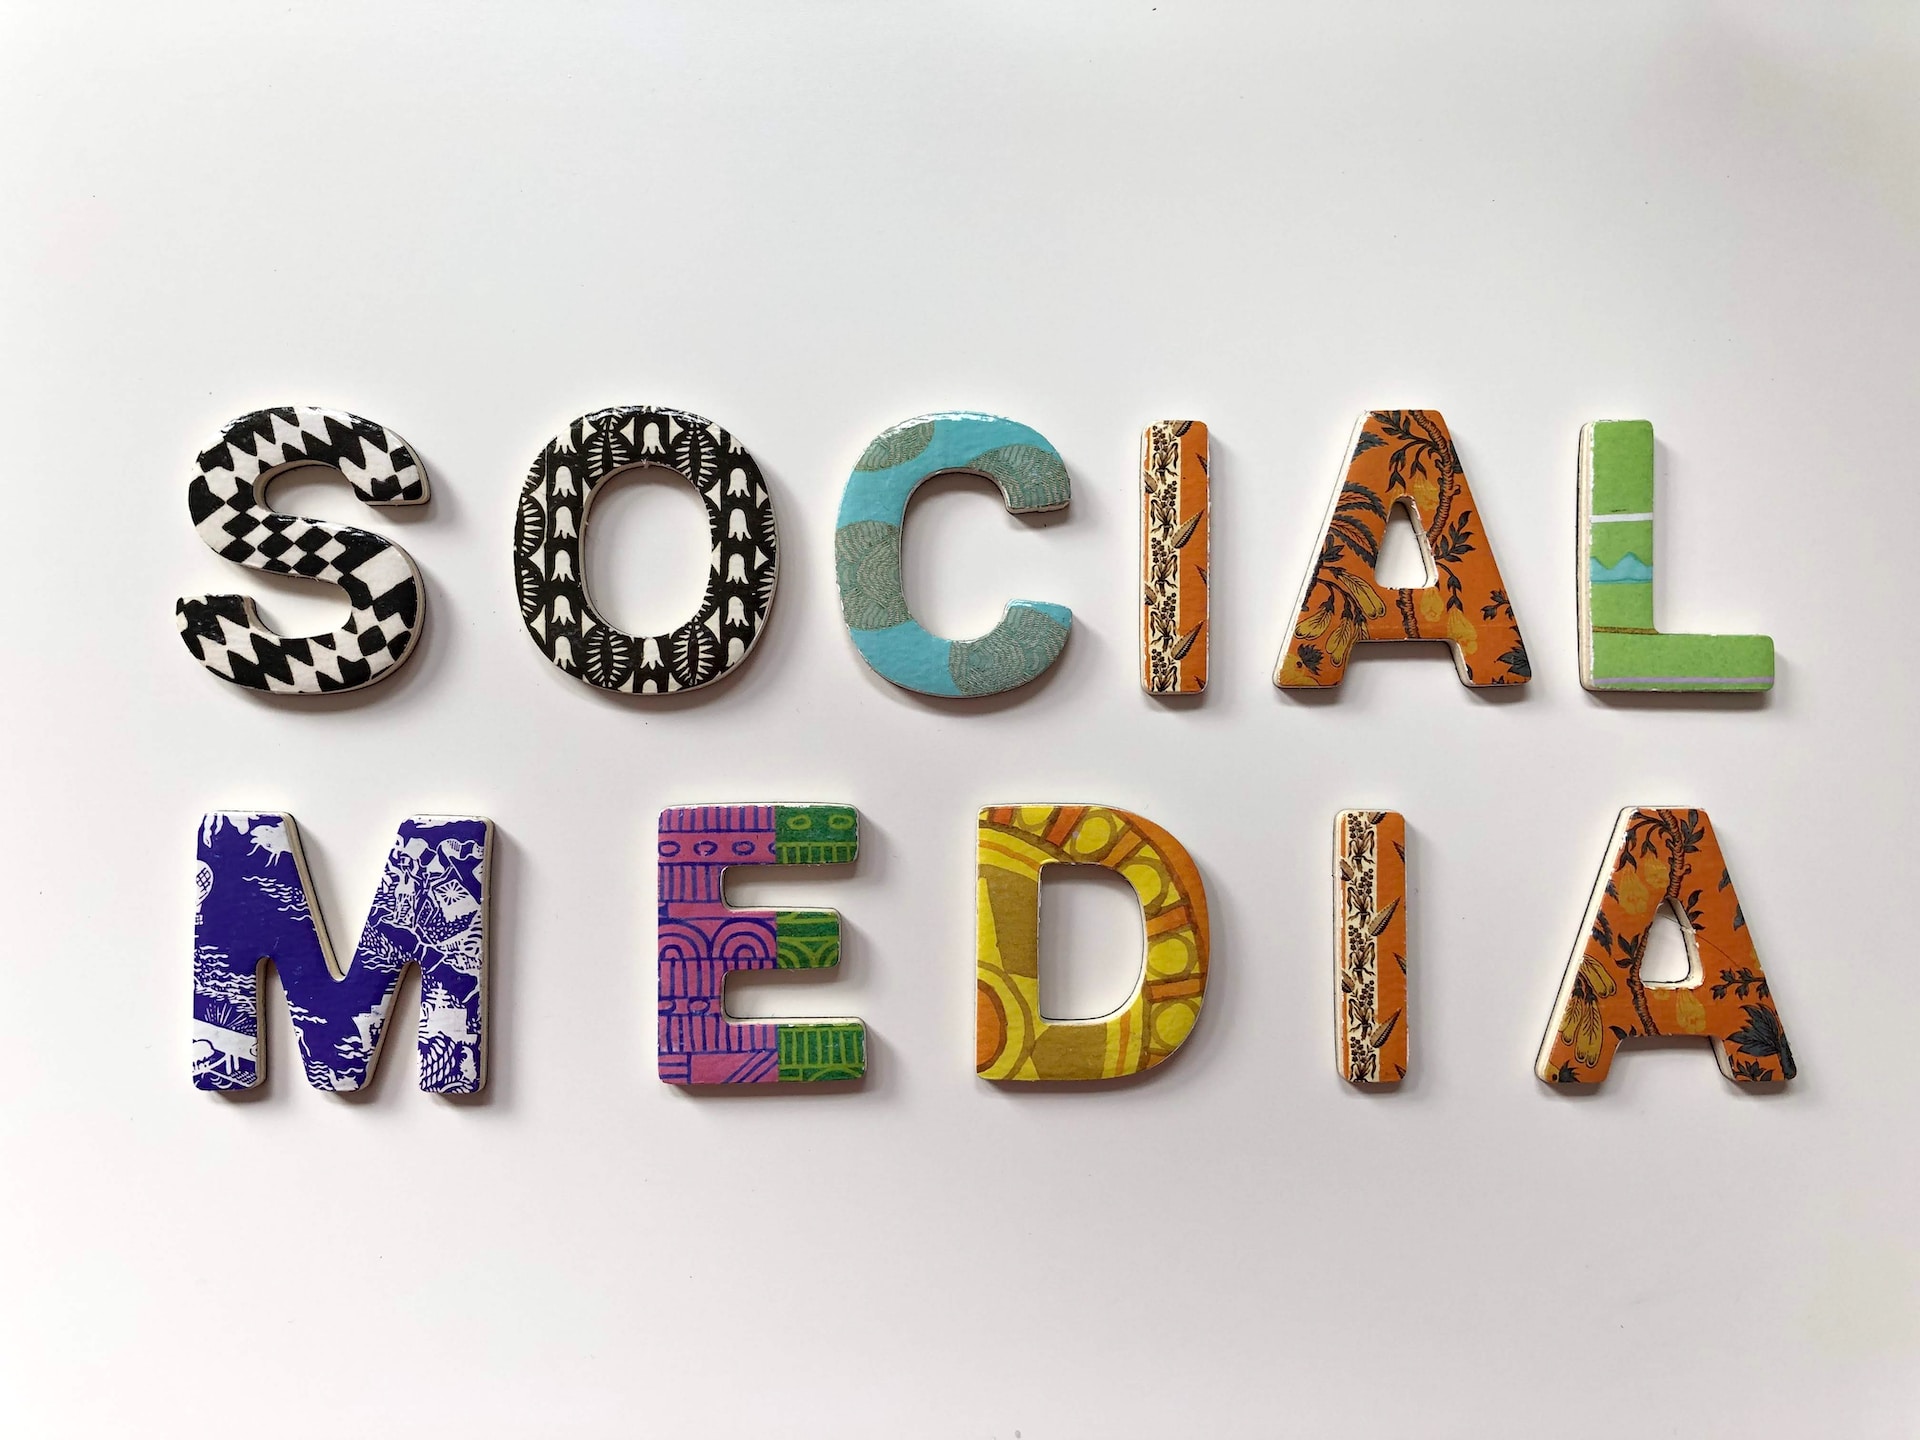 Social Media Marketing services